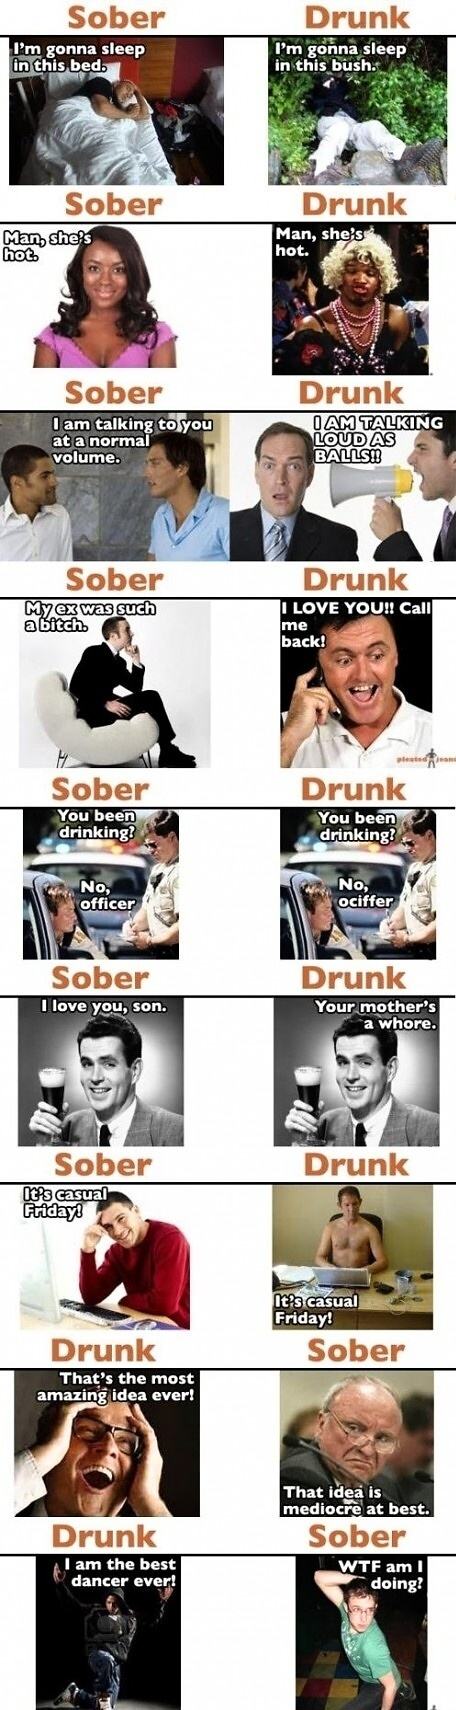 Obrázek Sober vs Drunk